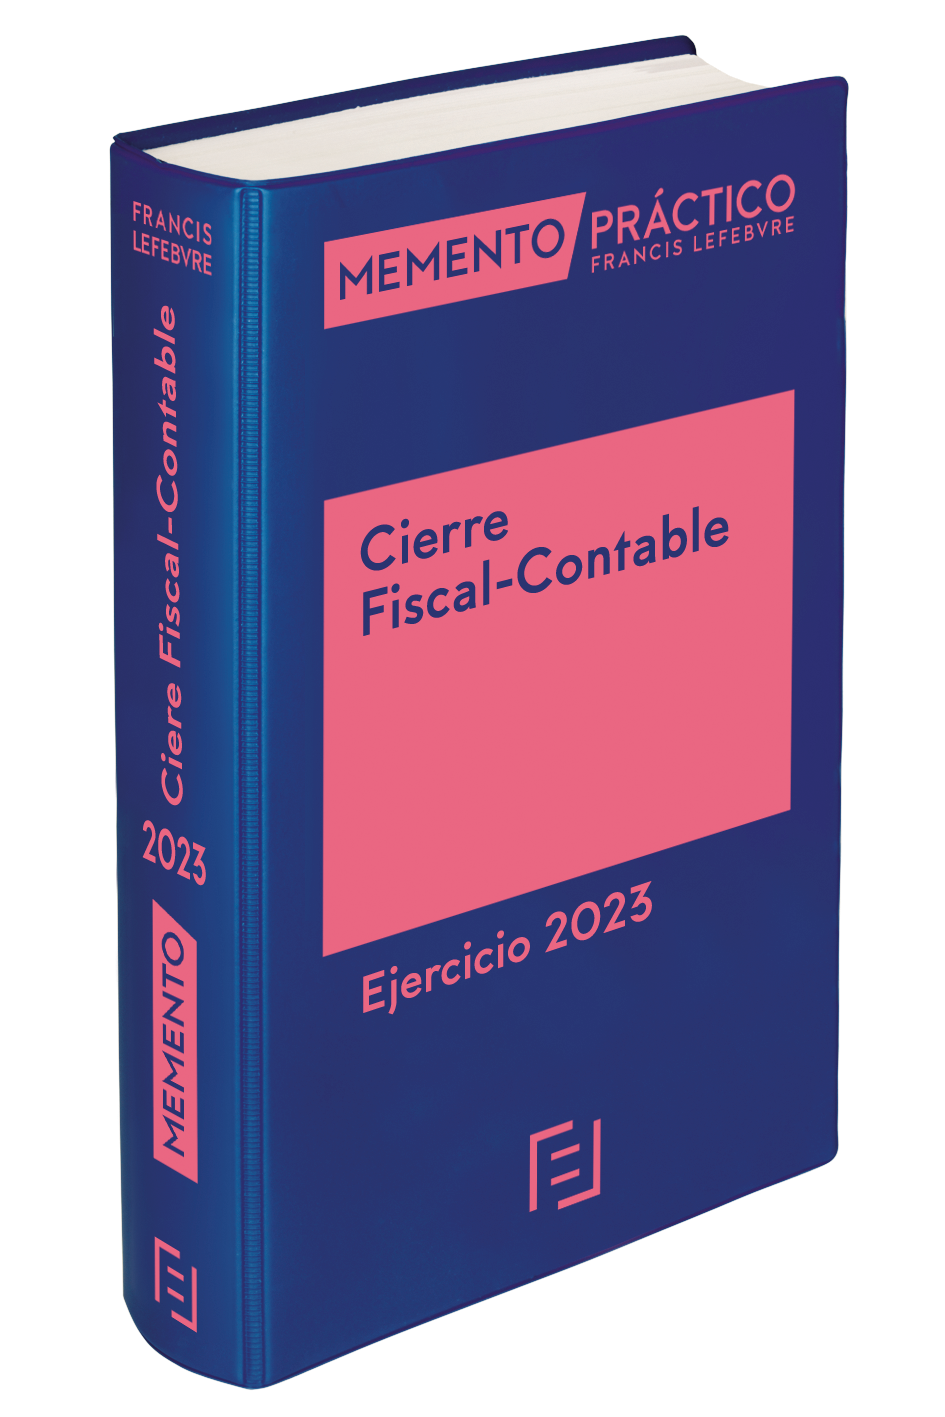 Memento Cierre Fiscal y Contable de Lefebvre edicion 2023